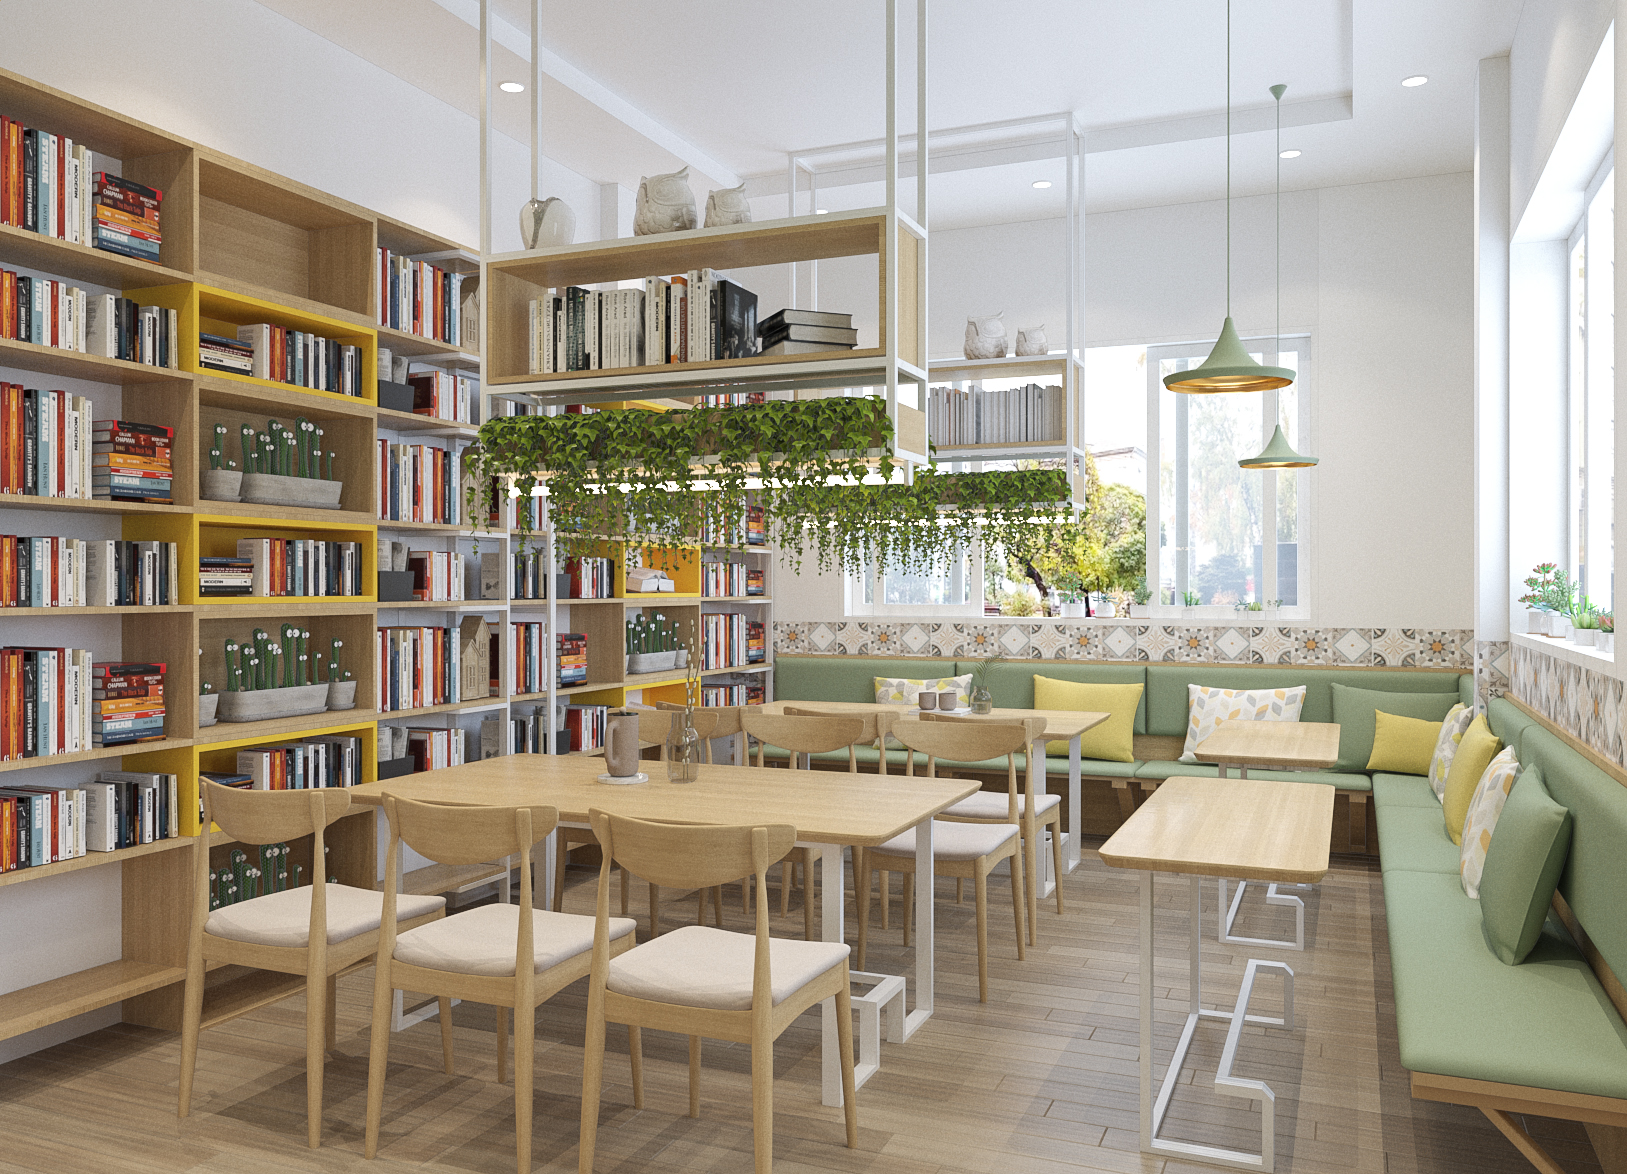 Thiết kế nội thất Cafe tại Hà Nội coffee Phùng Khoang 1615186977 3